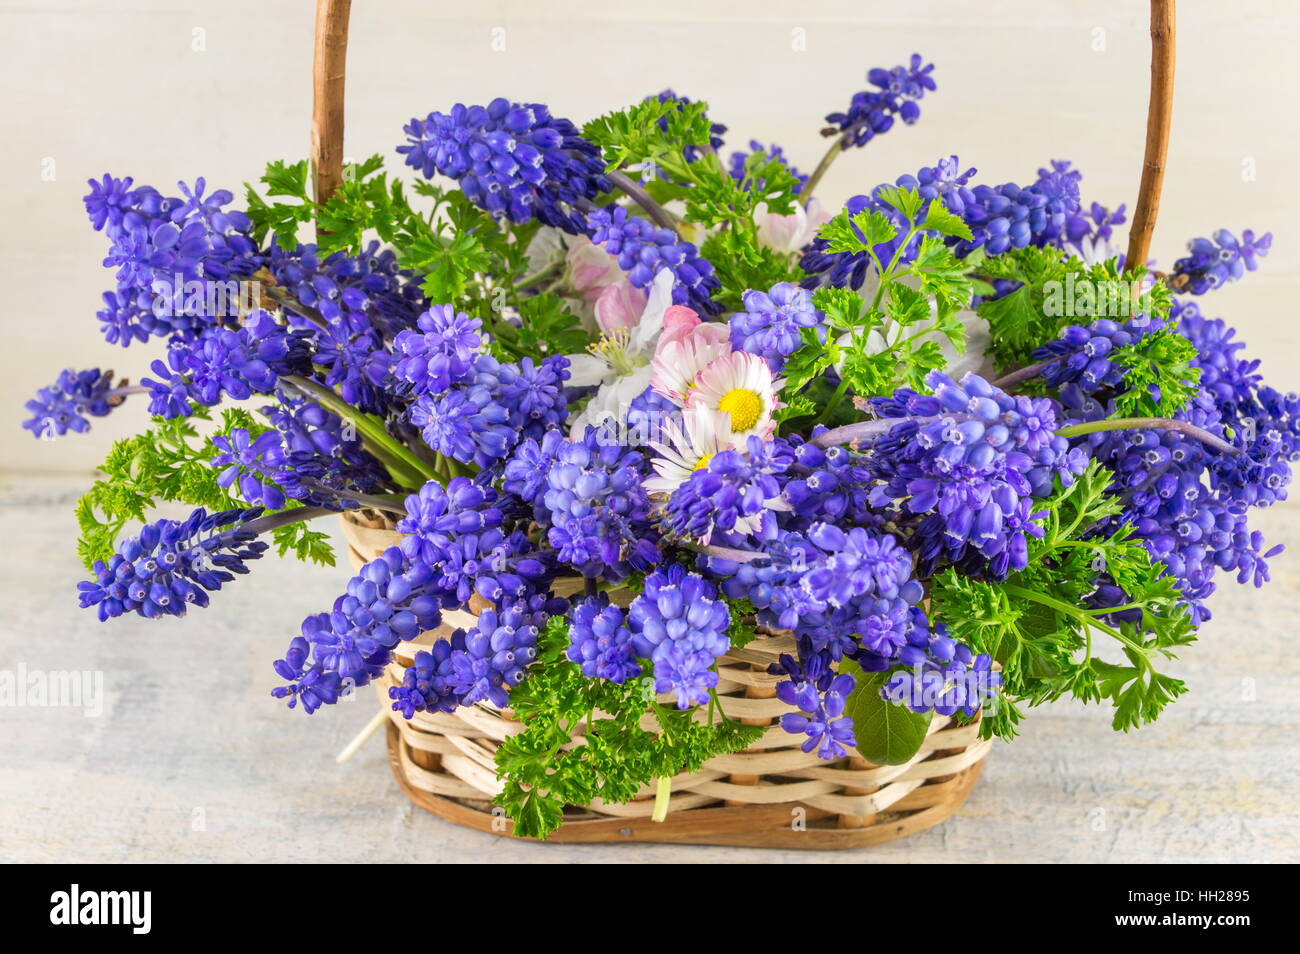 Bluebell Blumen Blumenstrauß in einem Weidenkorb Stockfoto